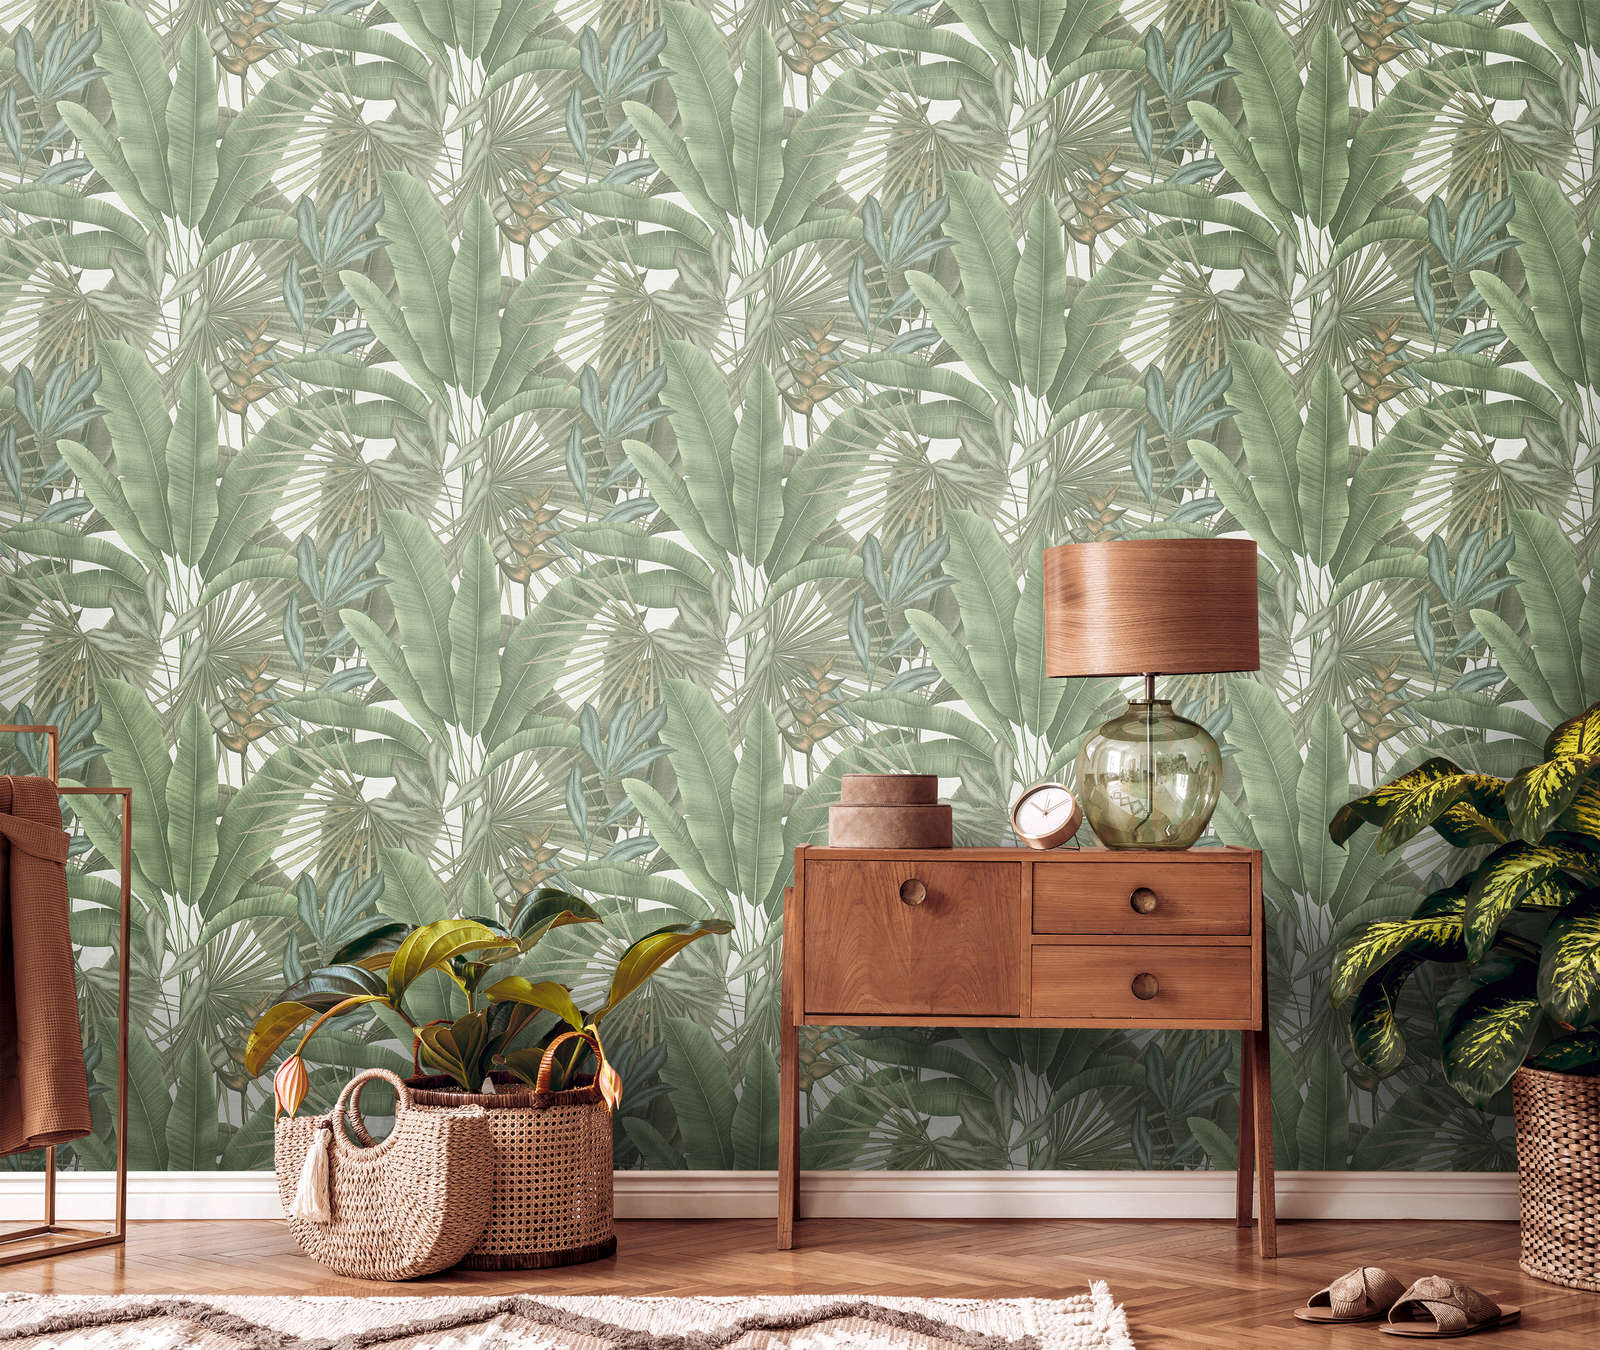             papier peint en papier jungle floral légèrement structuré avec grandes feuilles - vert, blanc, beige
        